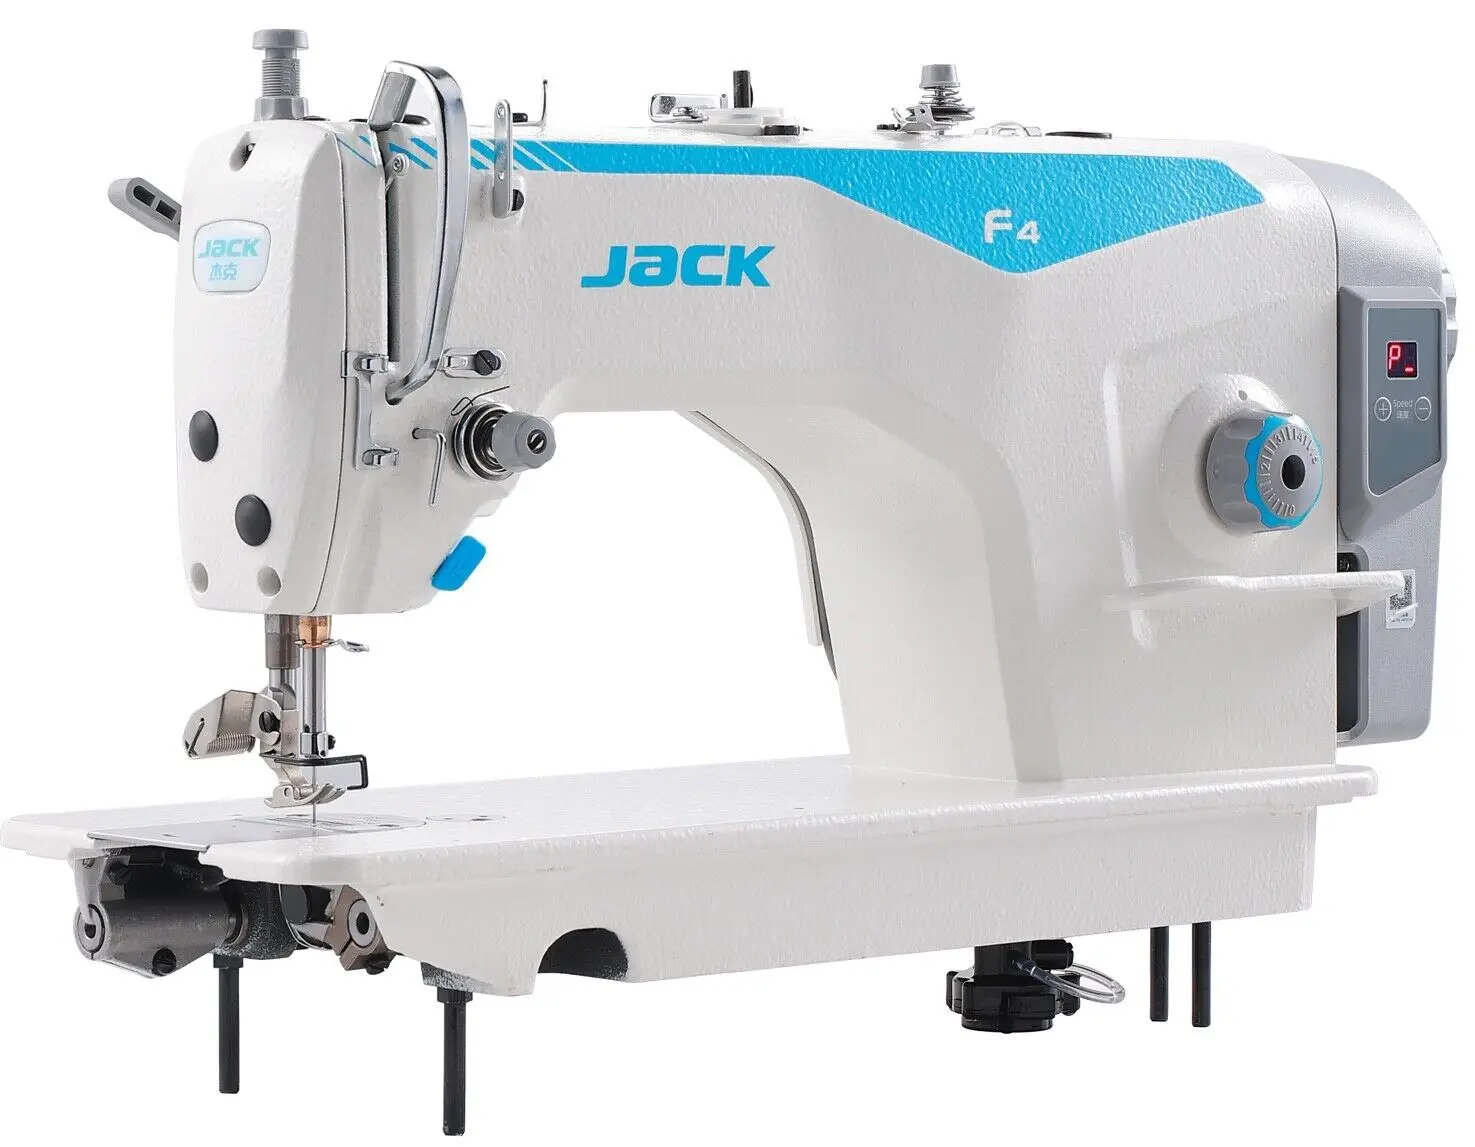 

Летняя скидка 50% Φ для нового Джека F4 прямой привод без отделки LOCKSTITCH, популярная Промышленная швейная машина